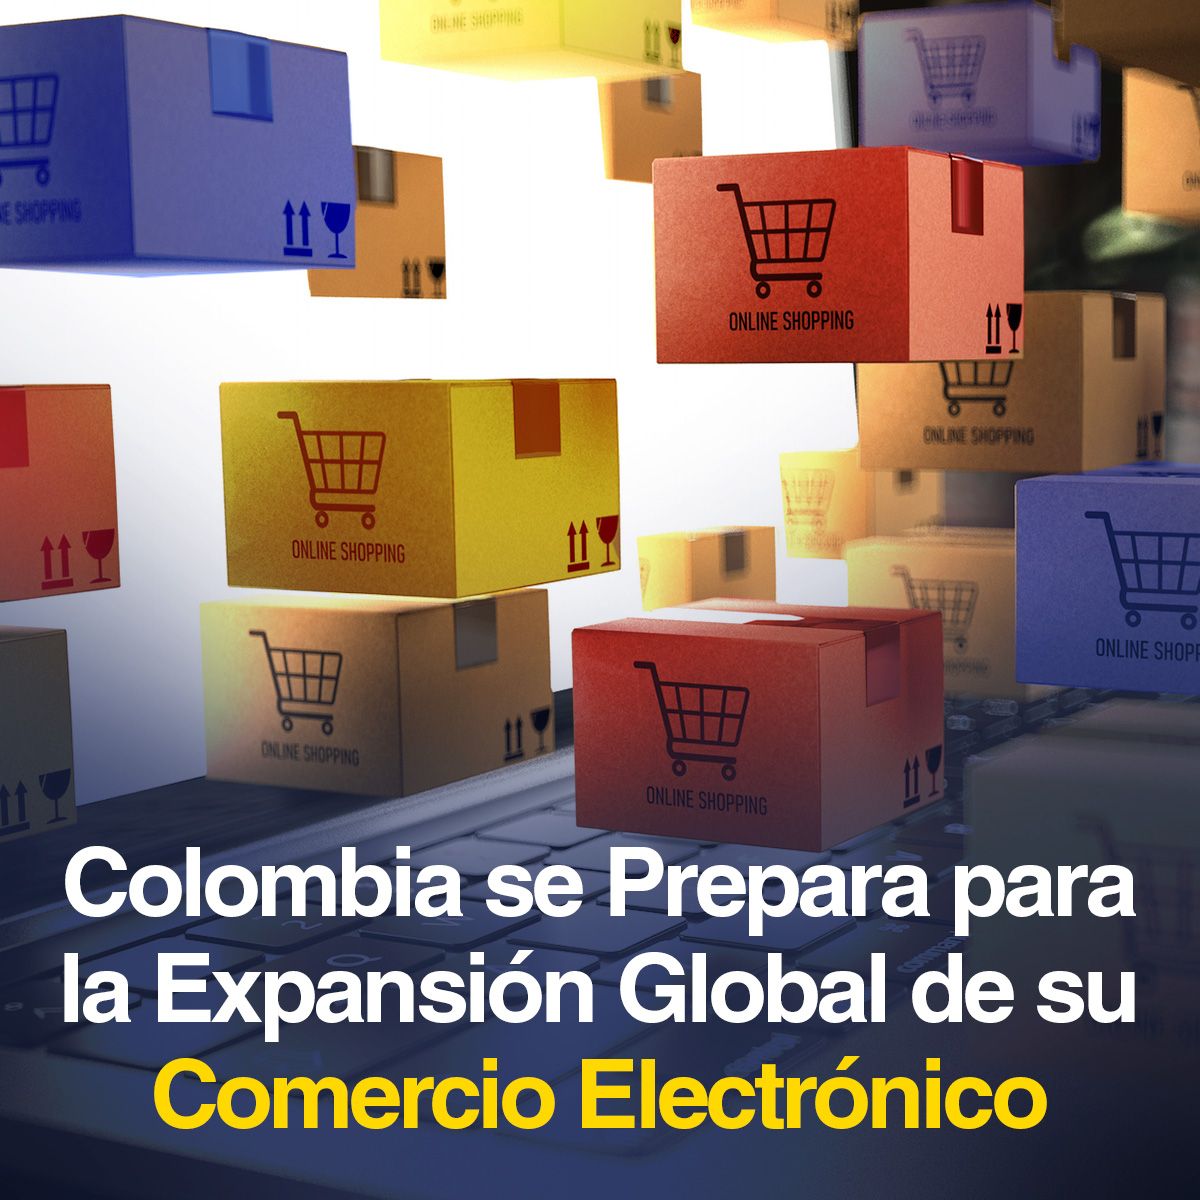 Colombia se Prepara para la Expansión Global de su Comercio Electrónico